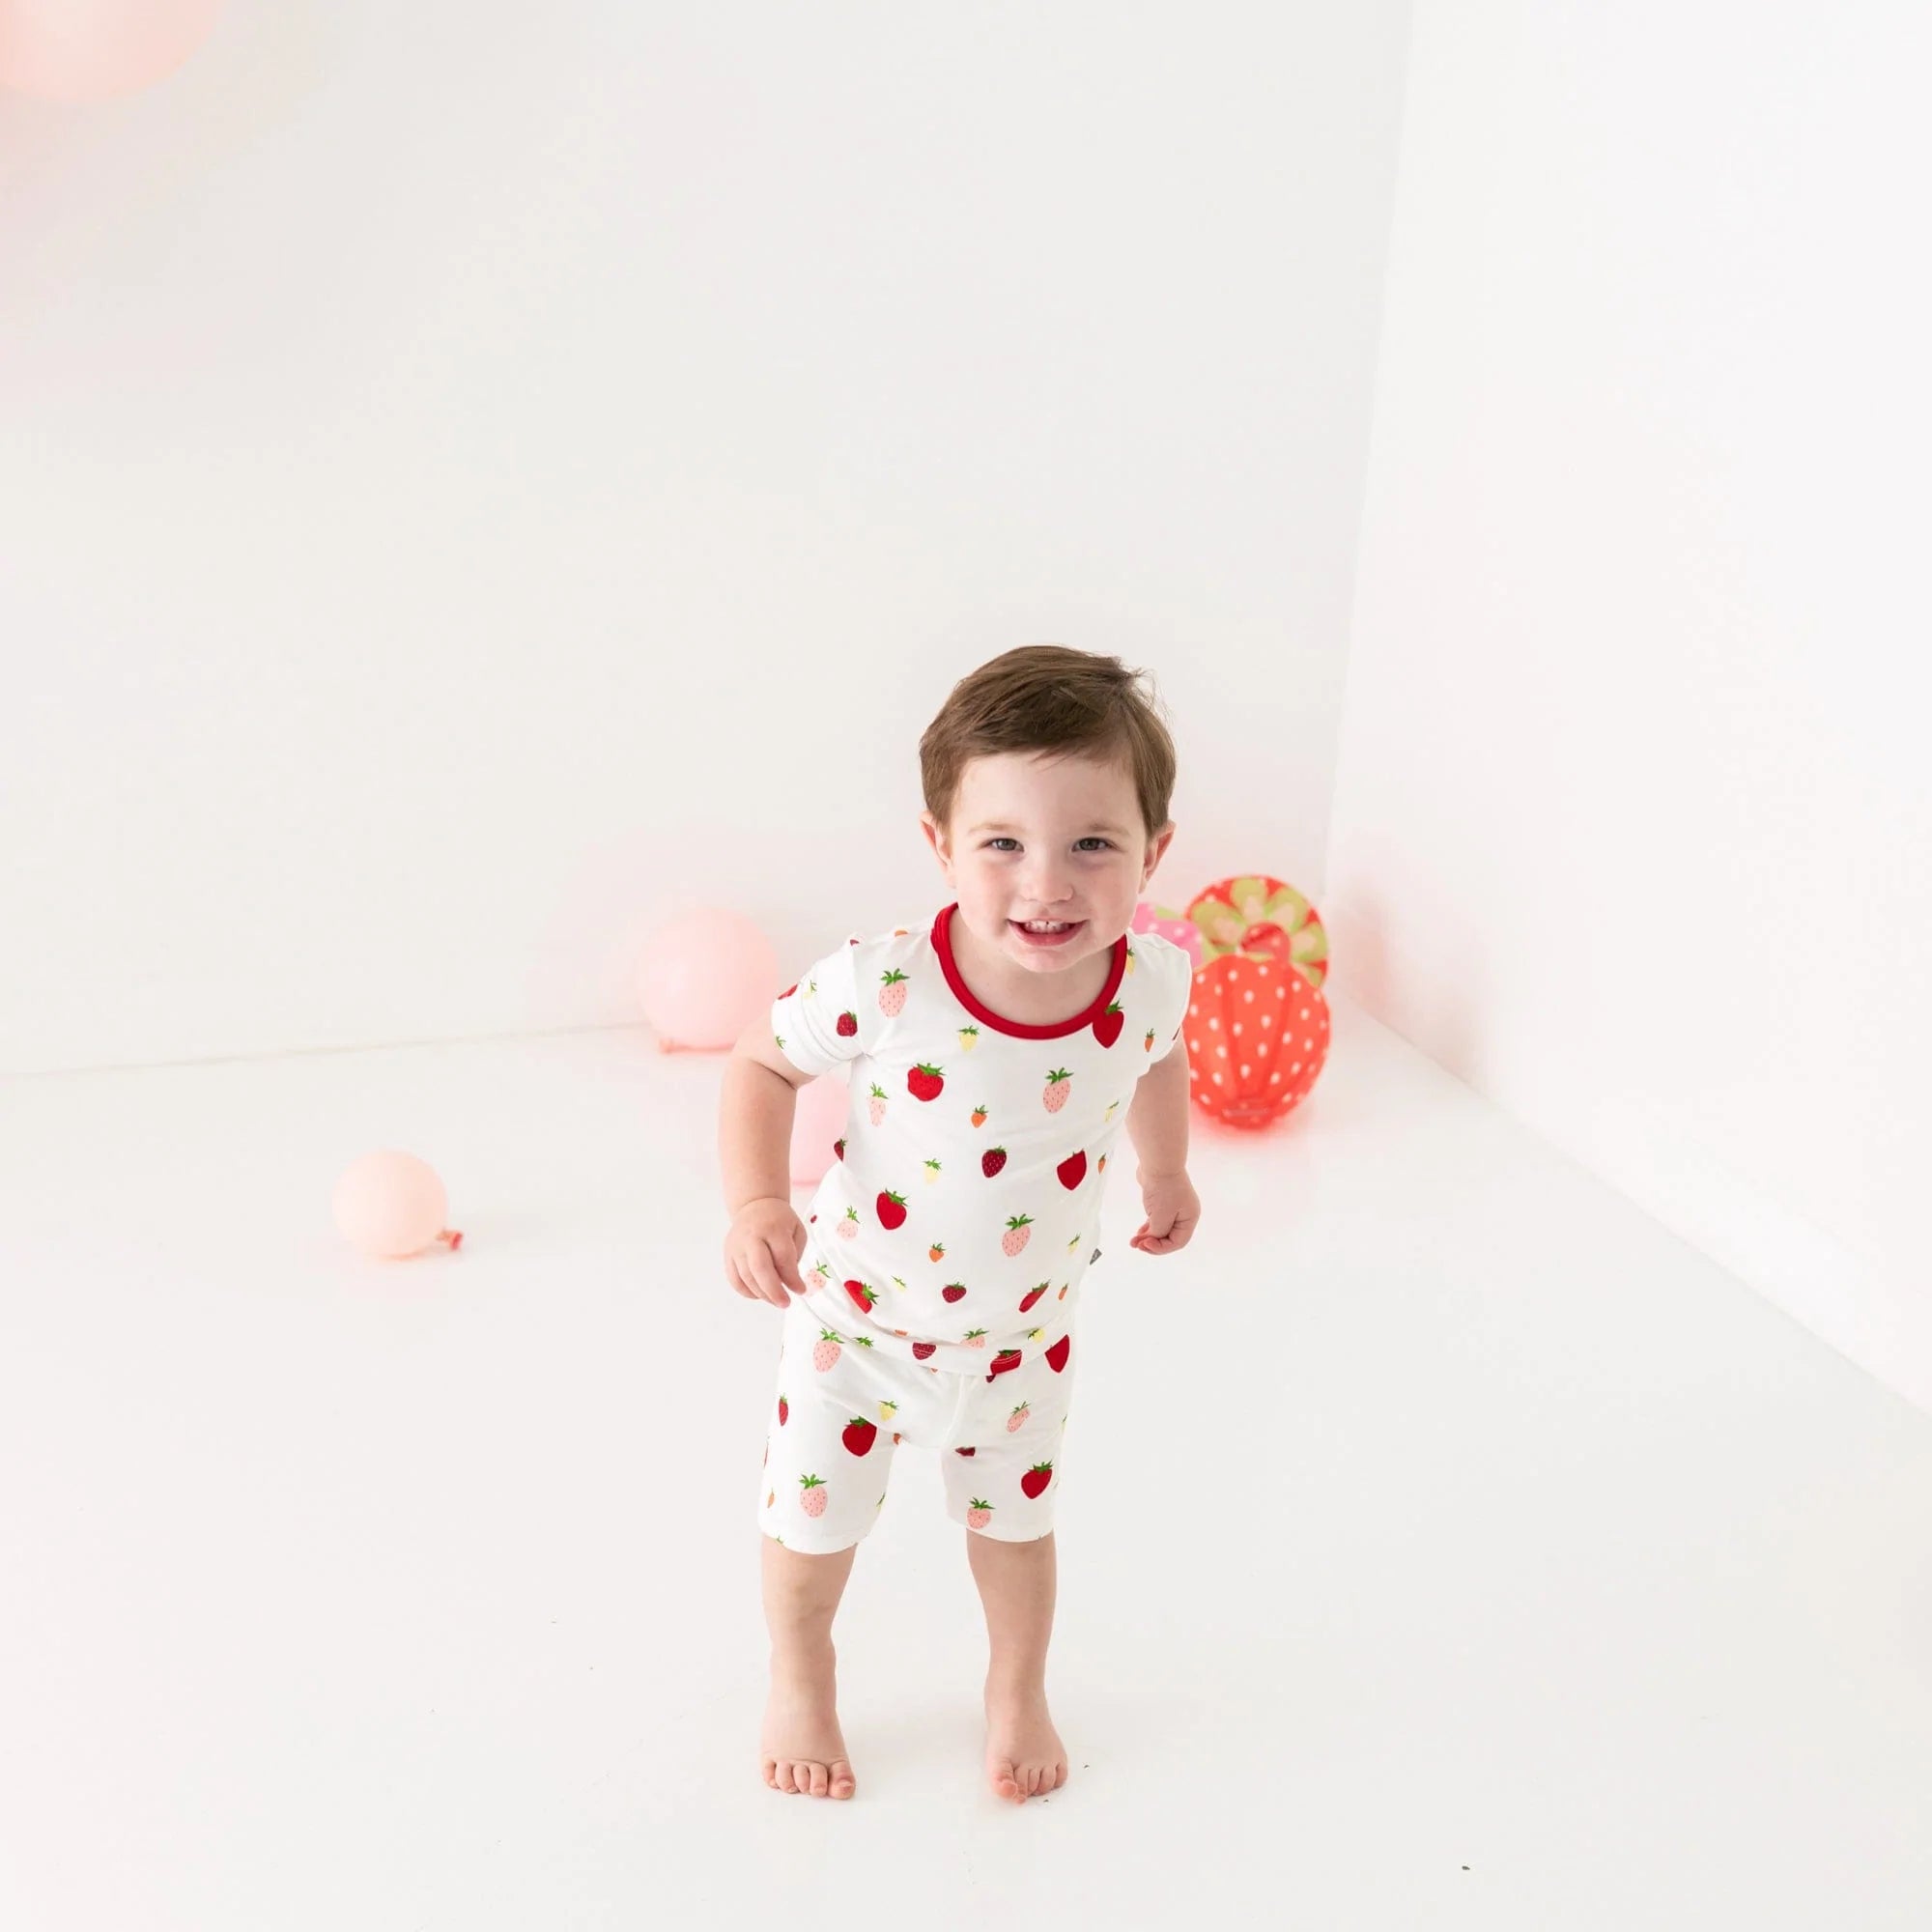 Strawberry pink Shortsleeve Pajama Cotton Set